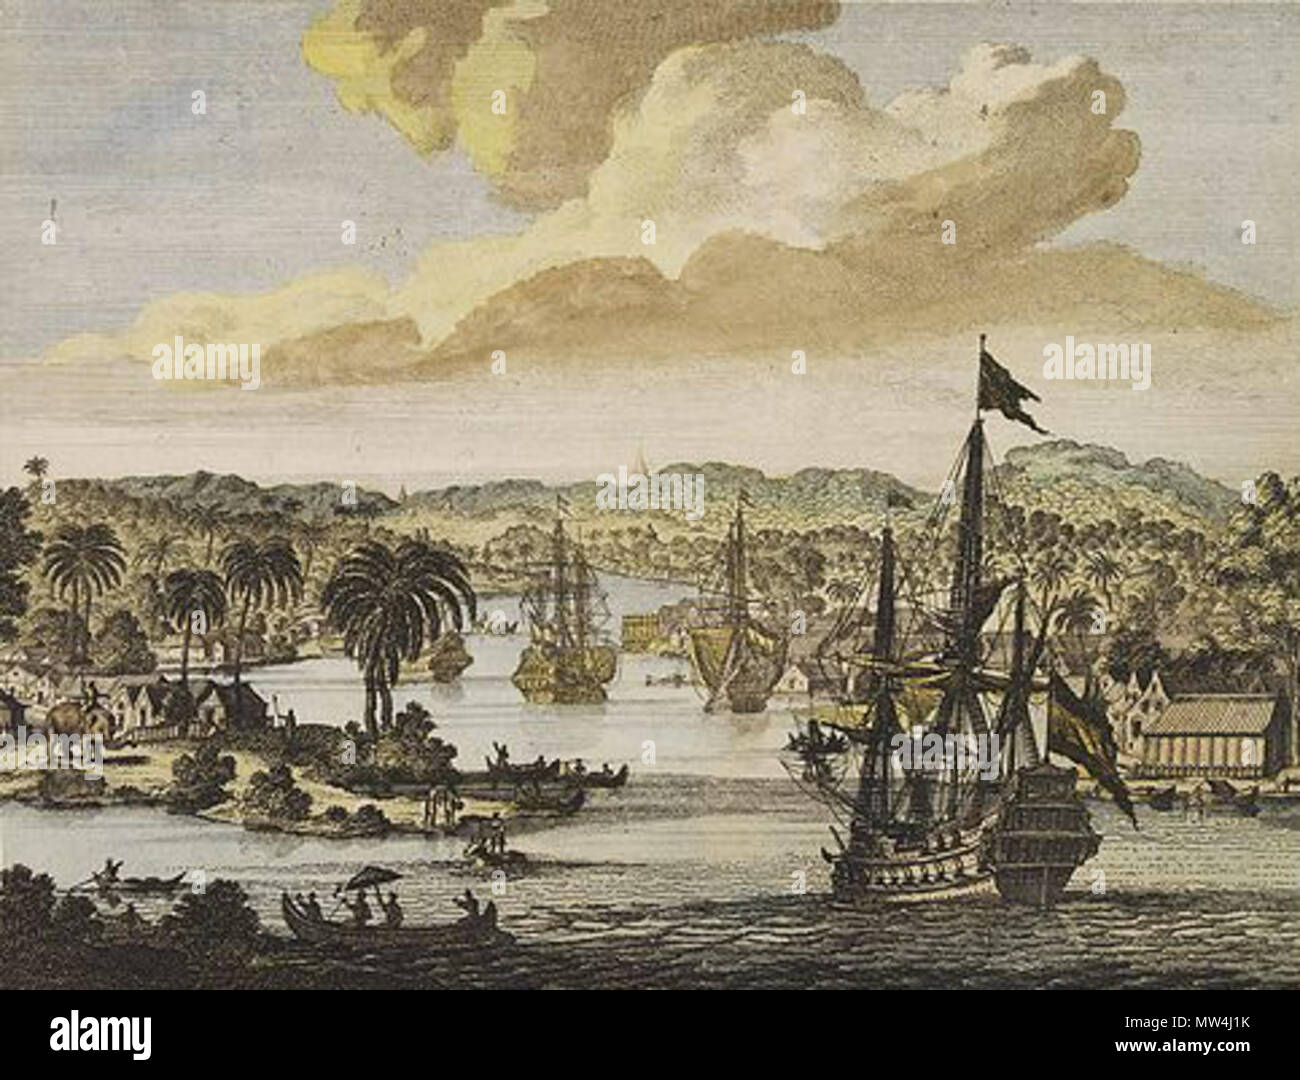 . Englisch: Blick auf den Hafen von Chittagong, gelegen an der Mündung eines Flusses voller Schiffe, einschließlich einer niederländischen Ostindienfahrer. 27 Februar 2013, 14:10:39. SCHENK, P.-Bandel, de Reede van de vermaerde Koopstadt Arrakan (Chittagong) 174 NIEDERLÄNDISCHEN VOC-Schiffe in Chittagong oder Arakan Stockfoto